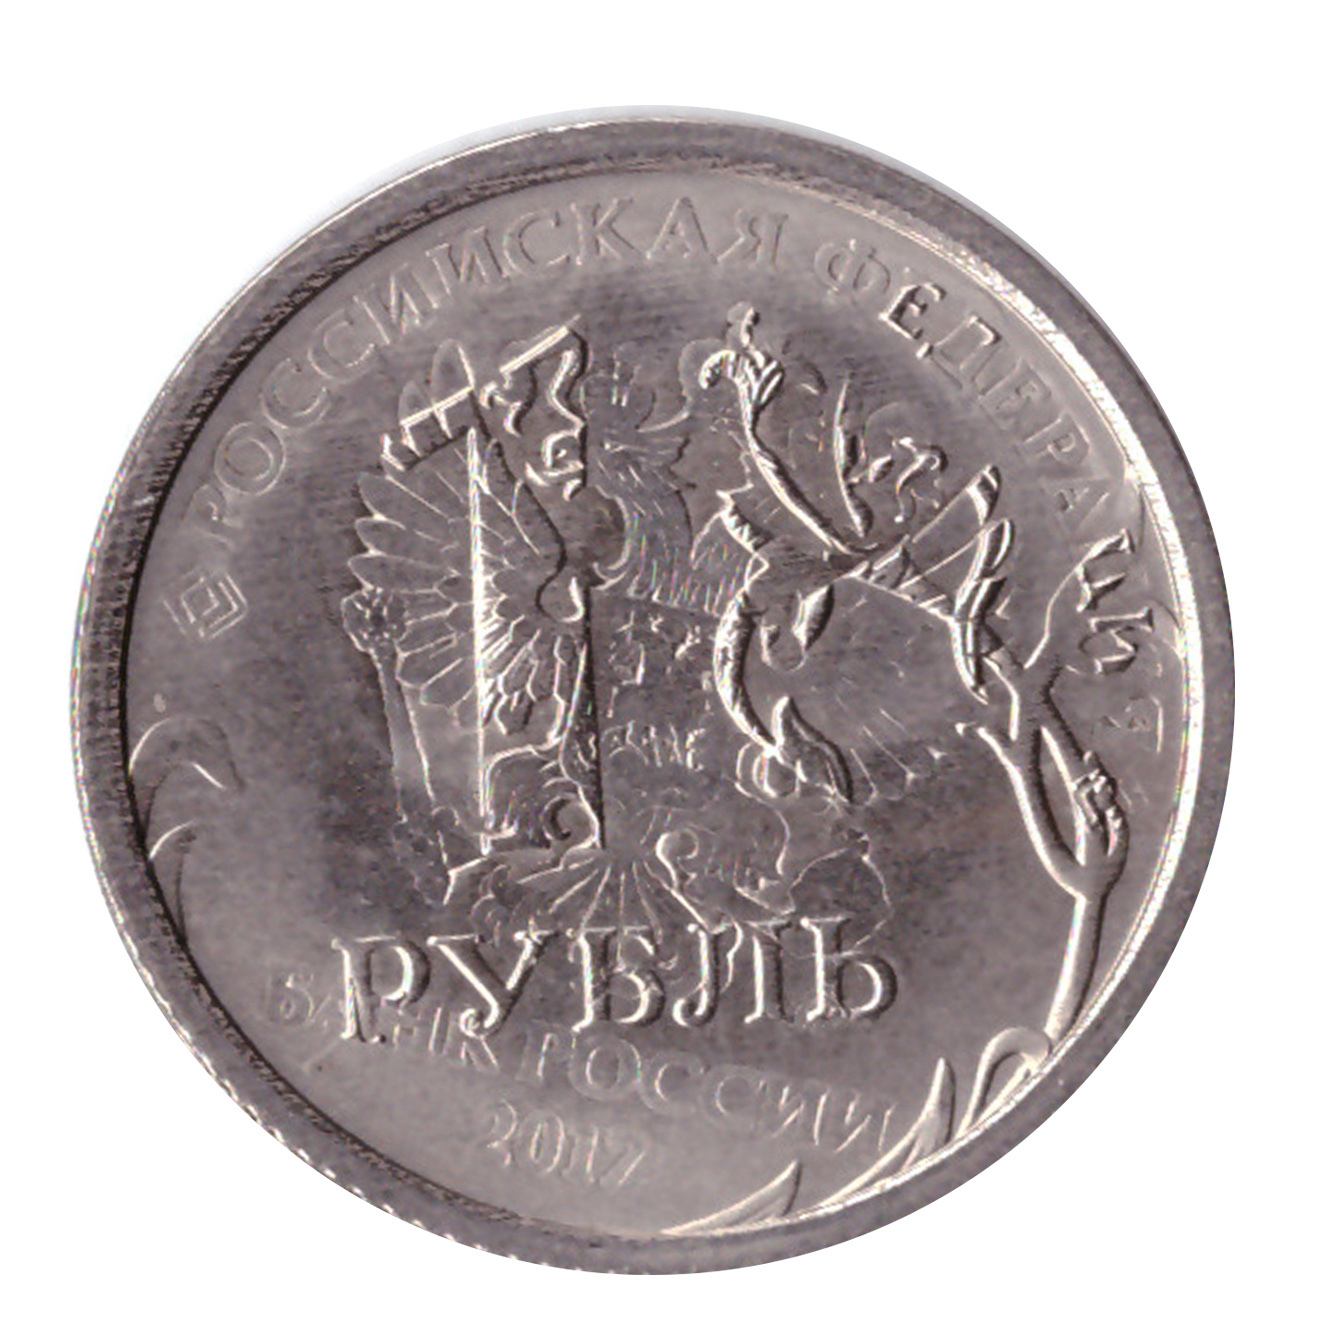 Рубль брак сколько стоит. Монета брак Аверс Аверс. Аверс монеты 1 рубль. Монета 1 рубль реверс и Аверс. Аверс монеты рубль.